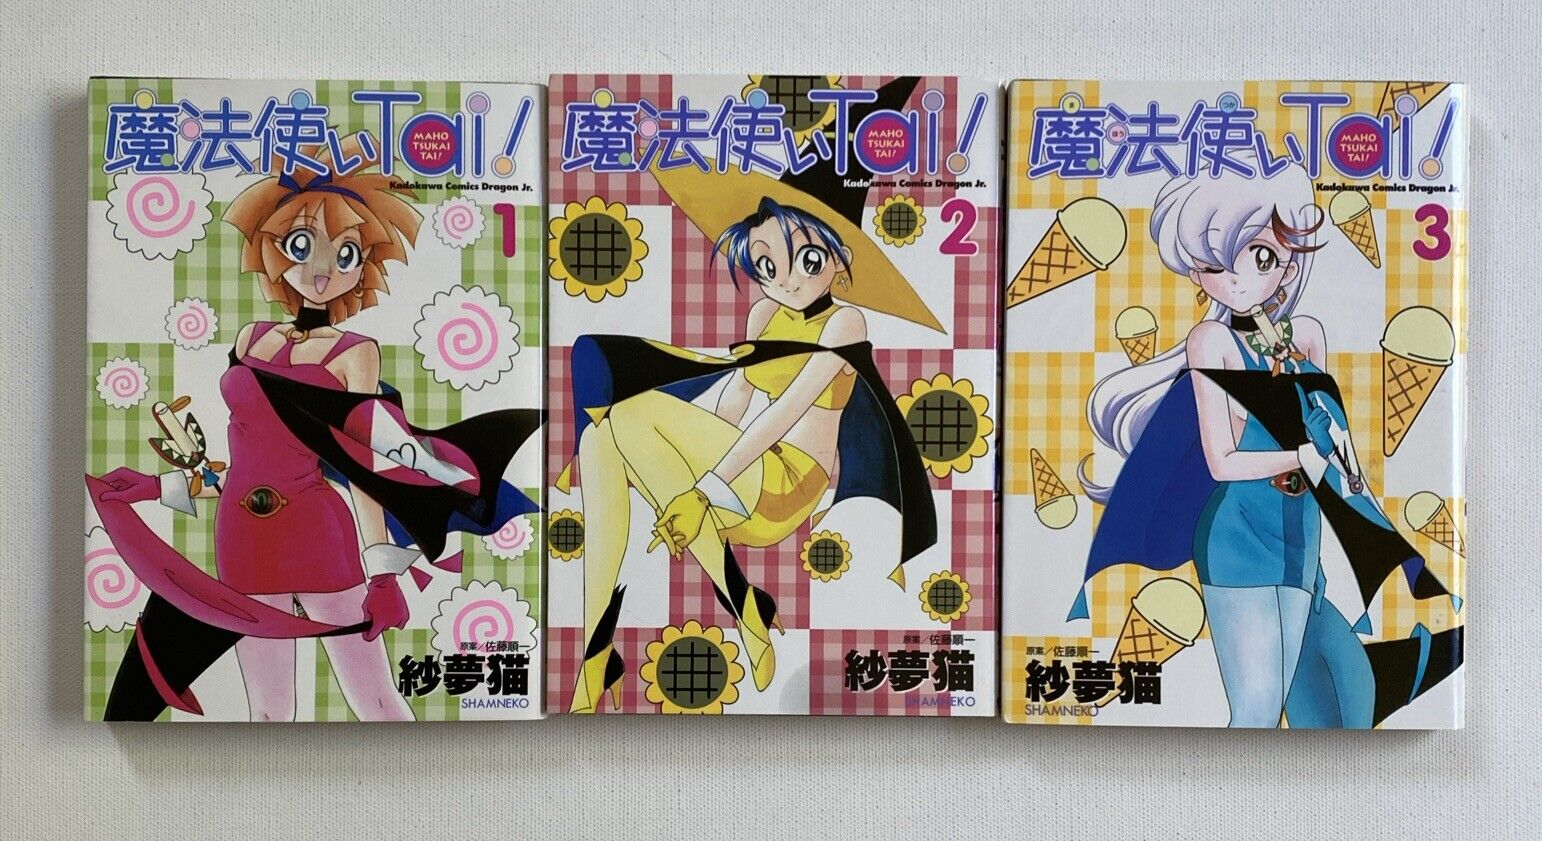 SHOHAN OOP: Magic User's Club / Maho Tsukai Tai  vol.1-3 Complete Set